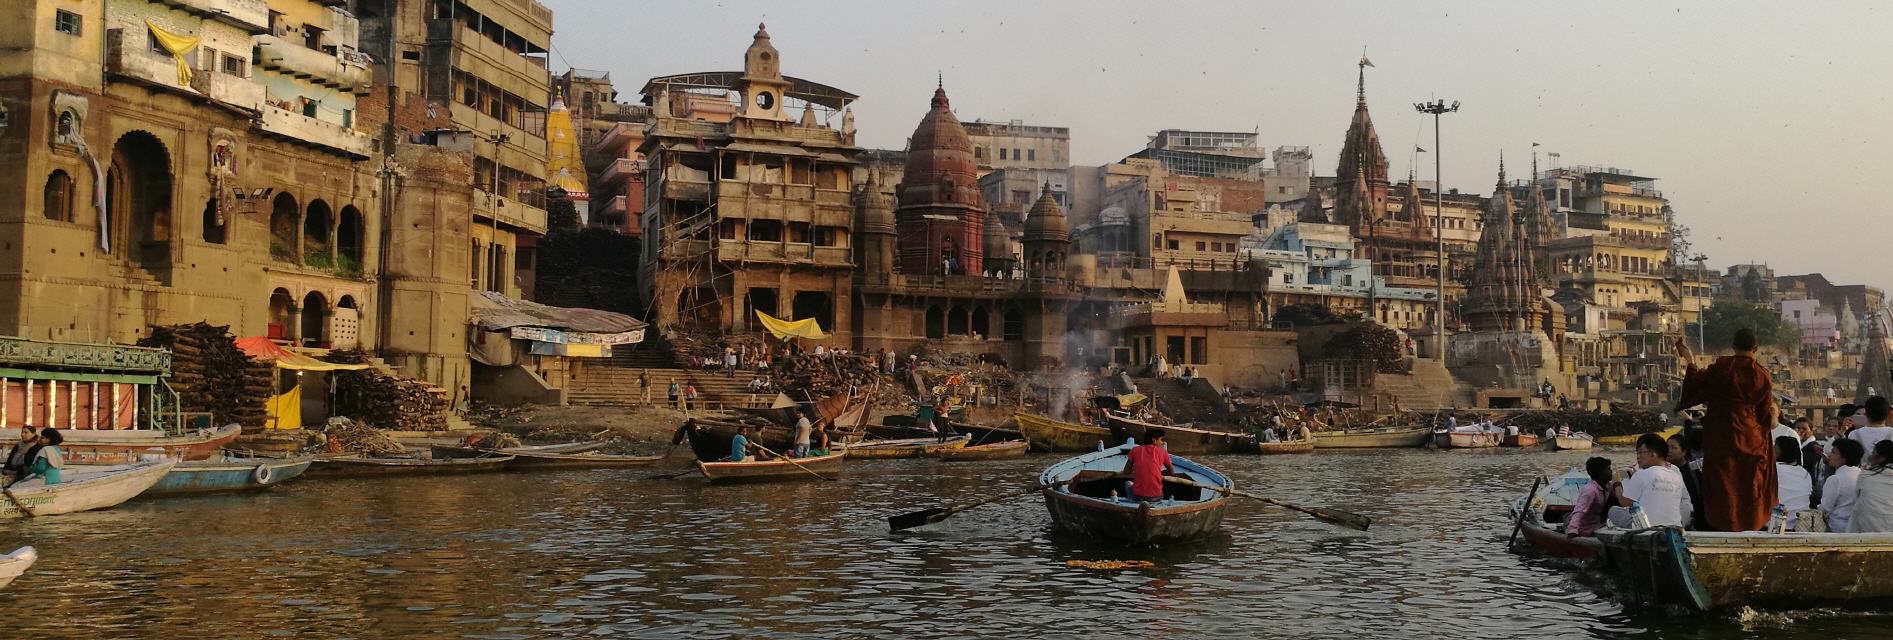 Die heilige Stadt Varanasi